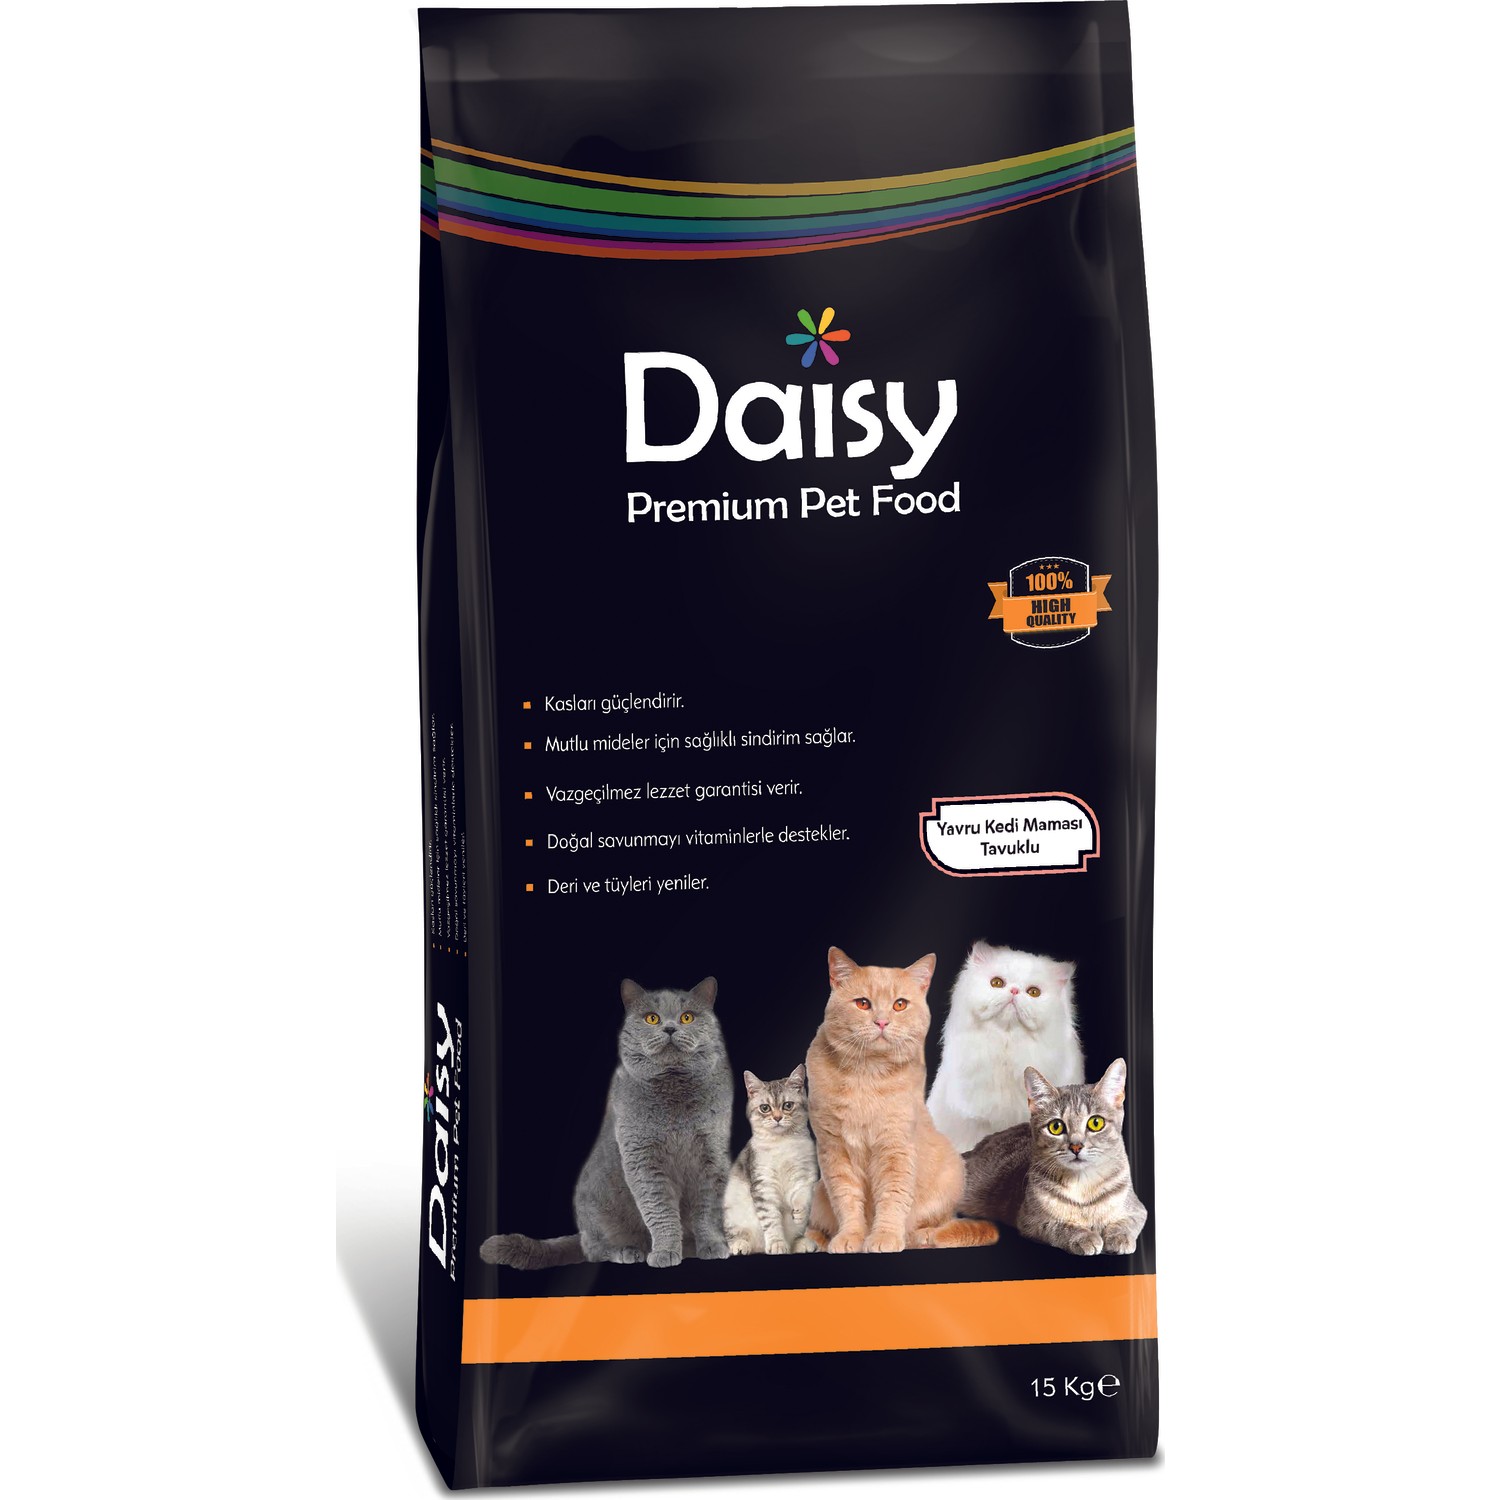 Daisy Premium Tavuklu Yavru Kedi Maması 15 kg Fiyatı